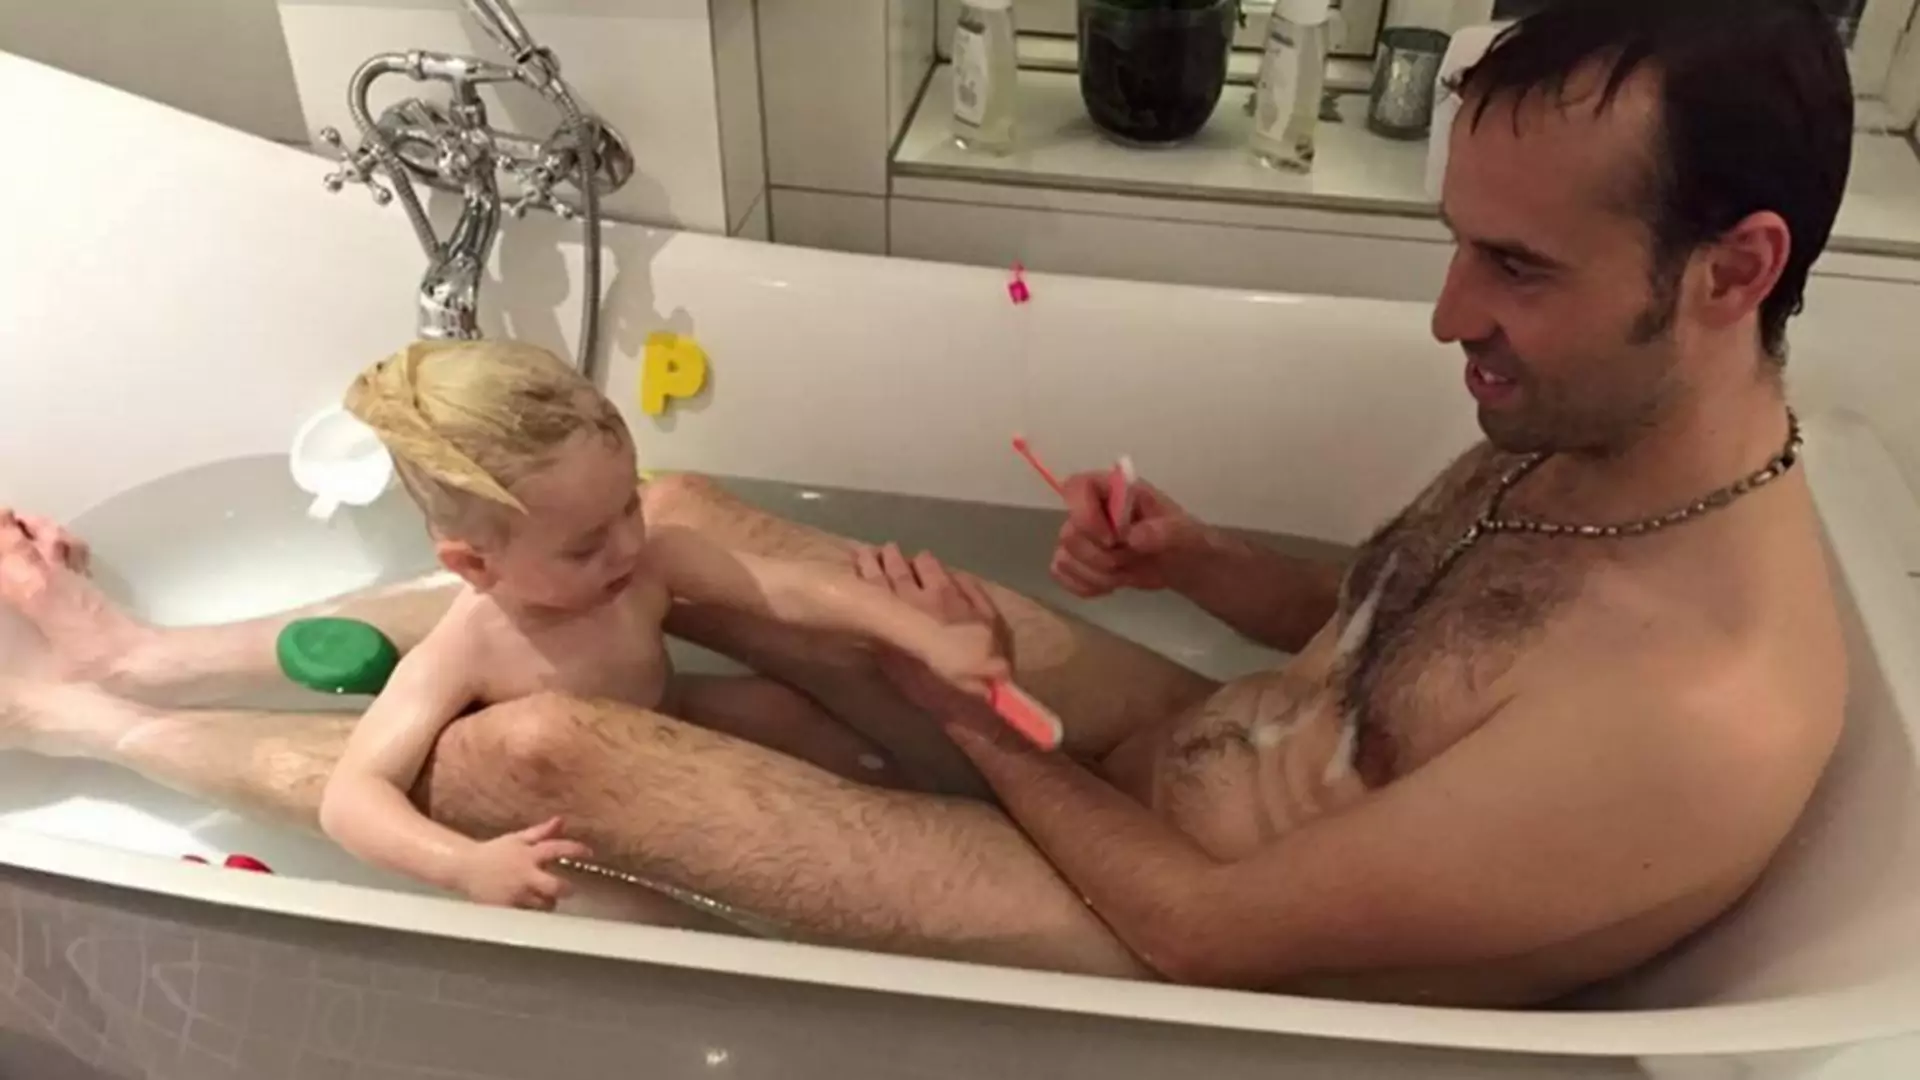 Ojciec z córką nago w wannie. To zdjęcie wywołało burzę w sieci